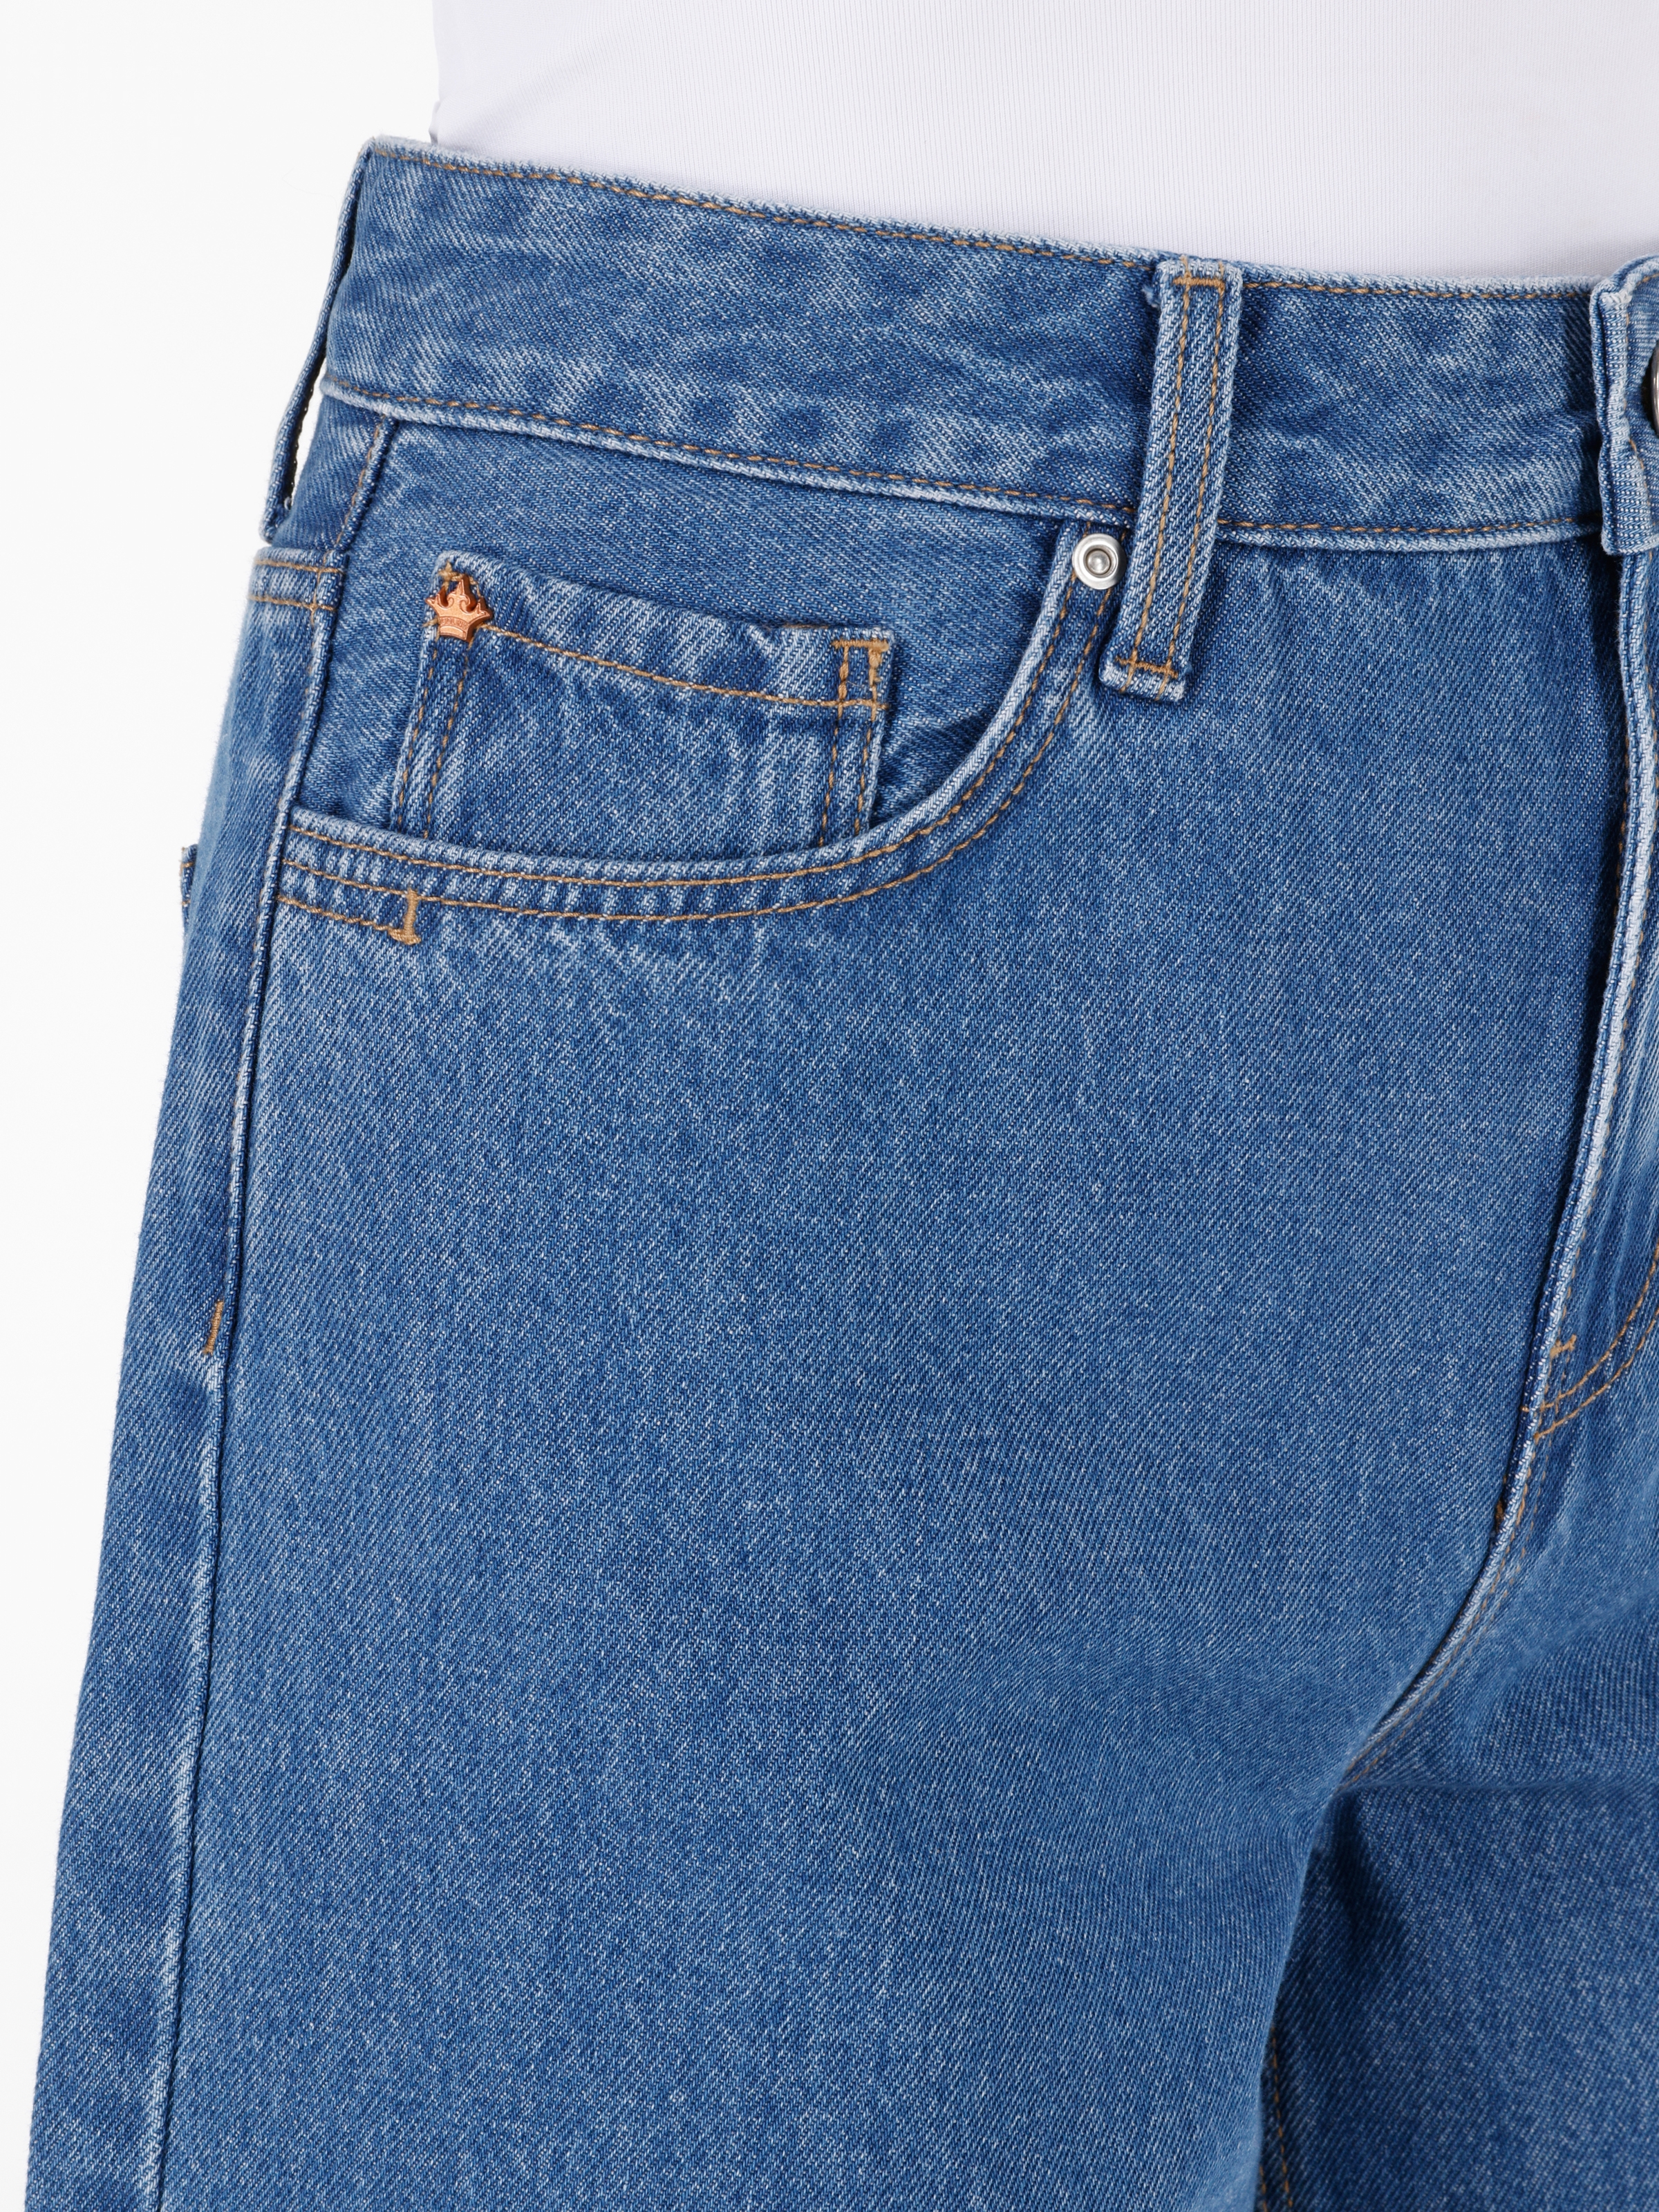 Afișați detalii pentru Short / Pantaloni Scurti De Dama Albastru   